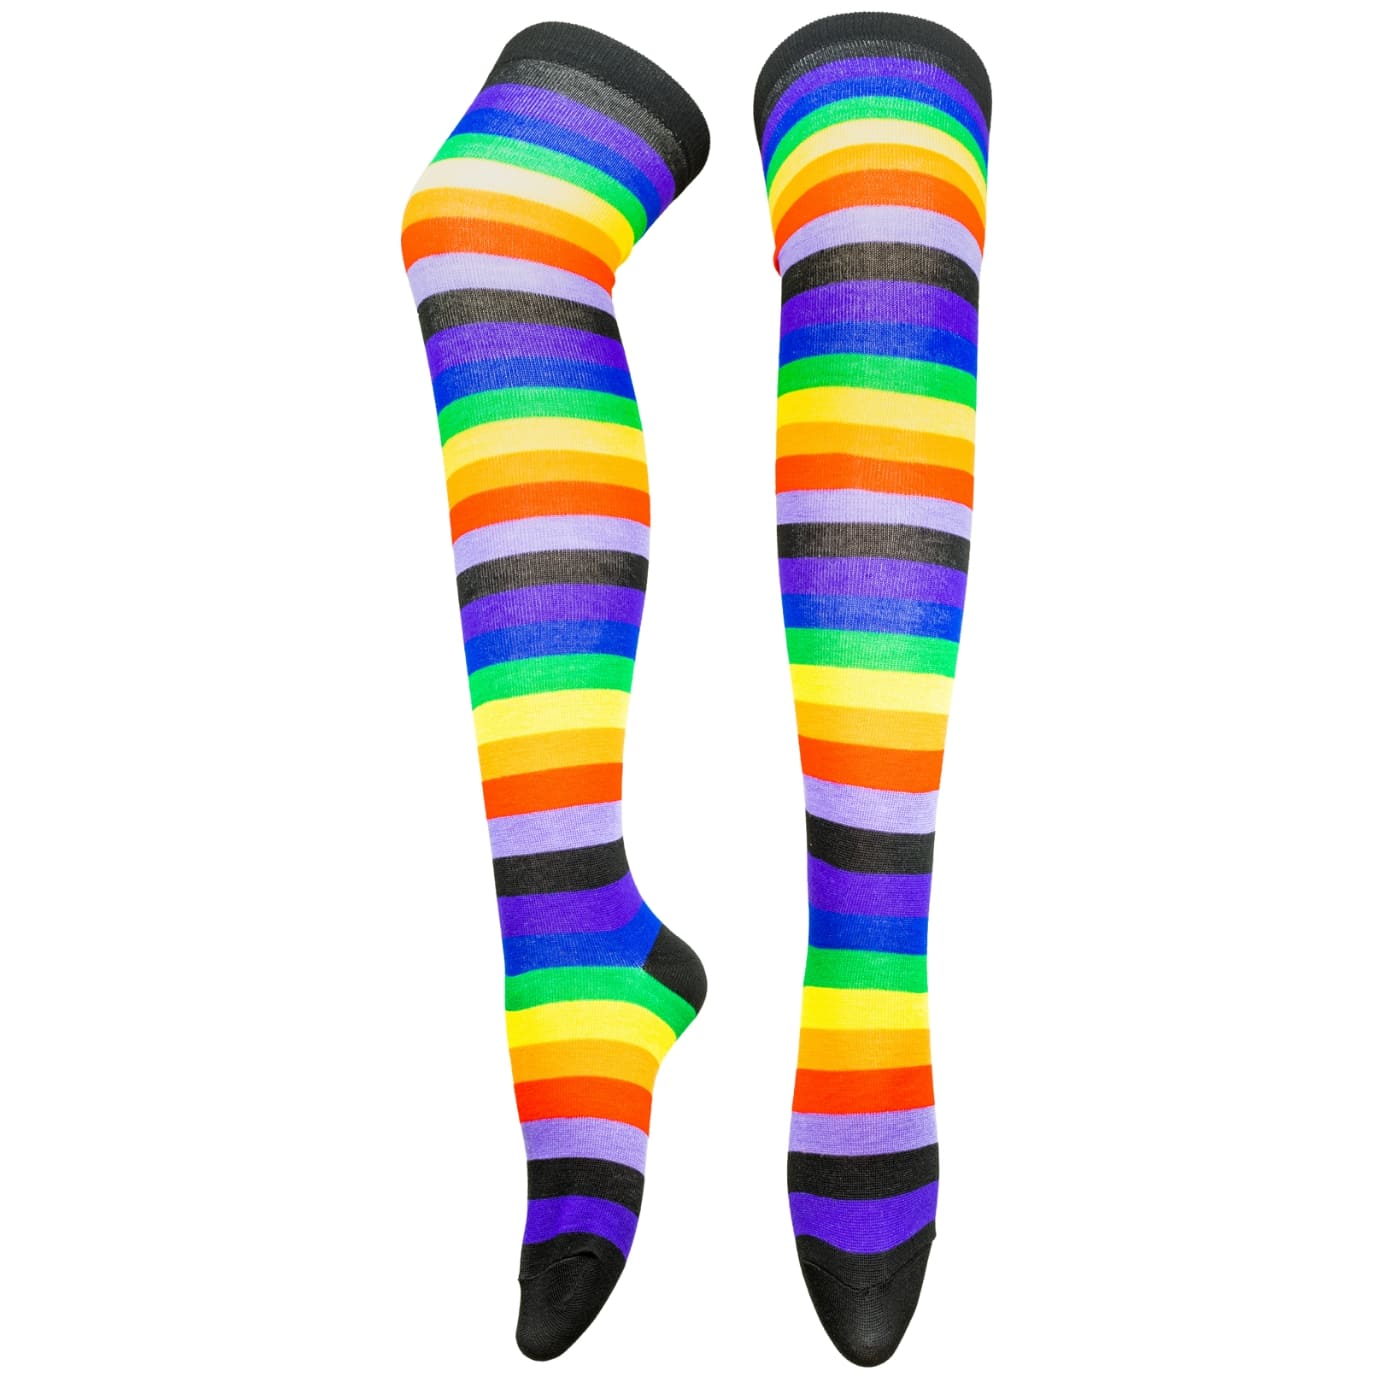 Black Rainbow Stripe Over The Knee Socks by RainbowsAndFairies.com.au (Stripe Long Socks - Rainbow - Stockings - Colourful Socks - Vintage Inspired) - SKU: FW_SOCKL_RAINB_BLA - Pic-01